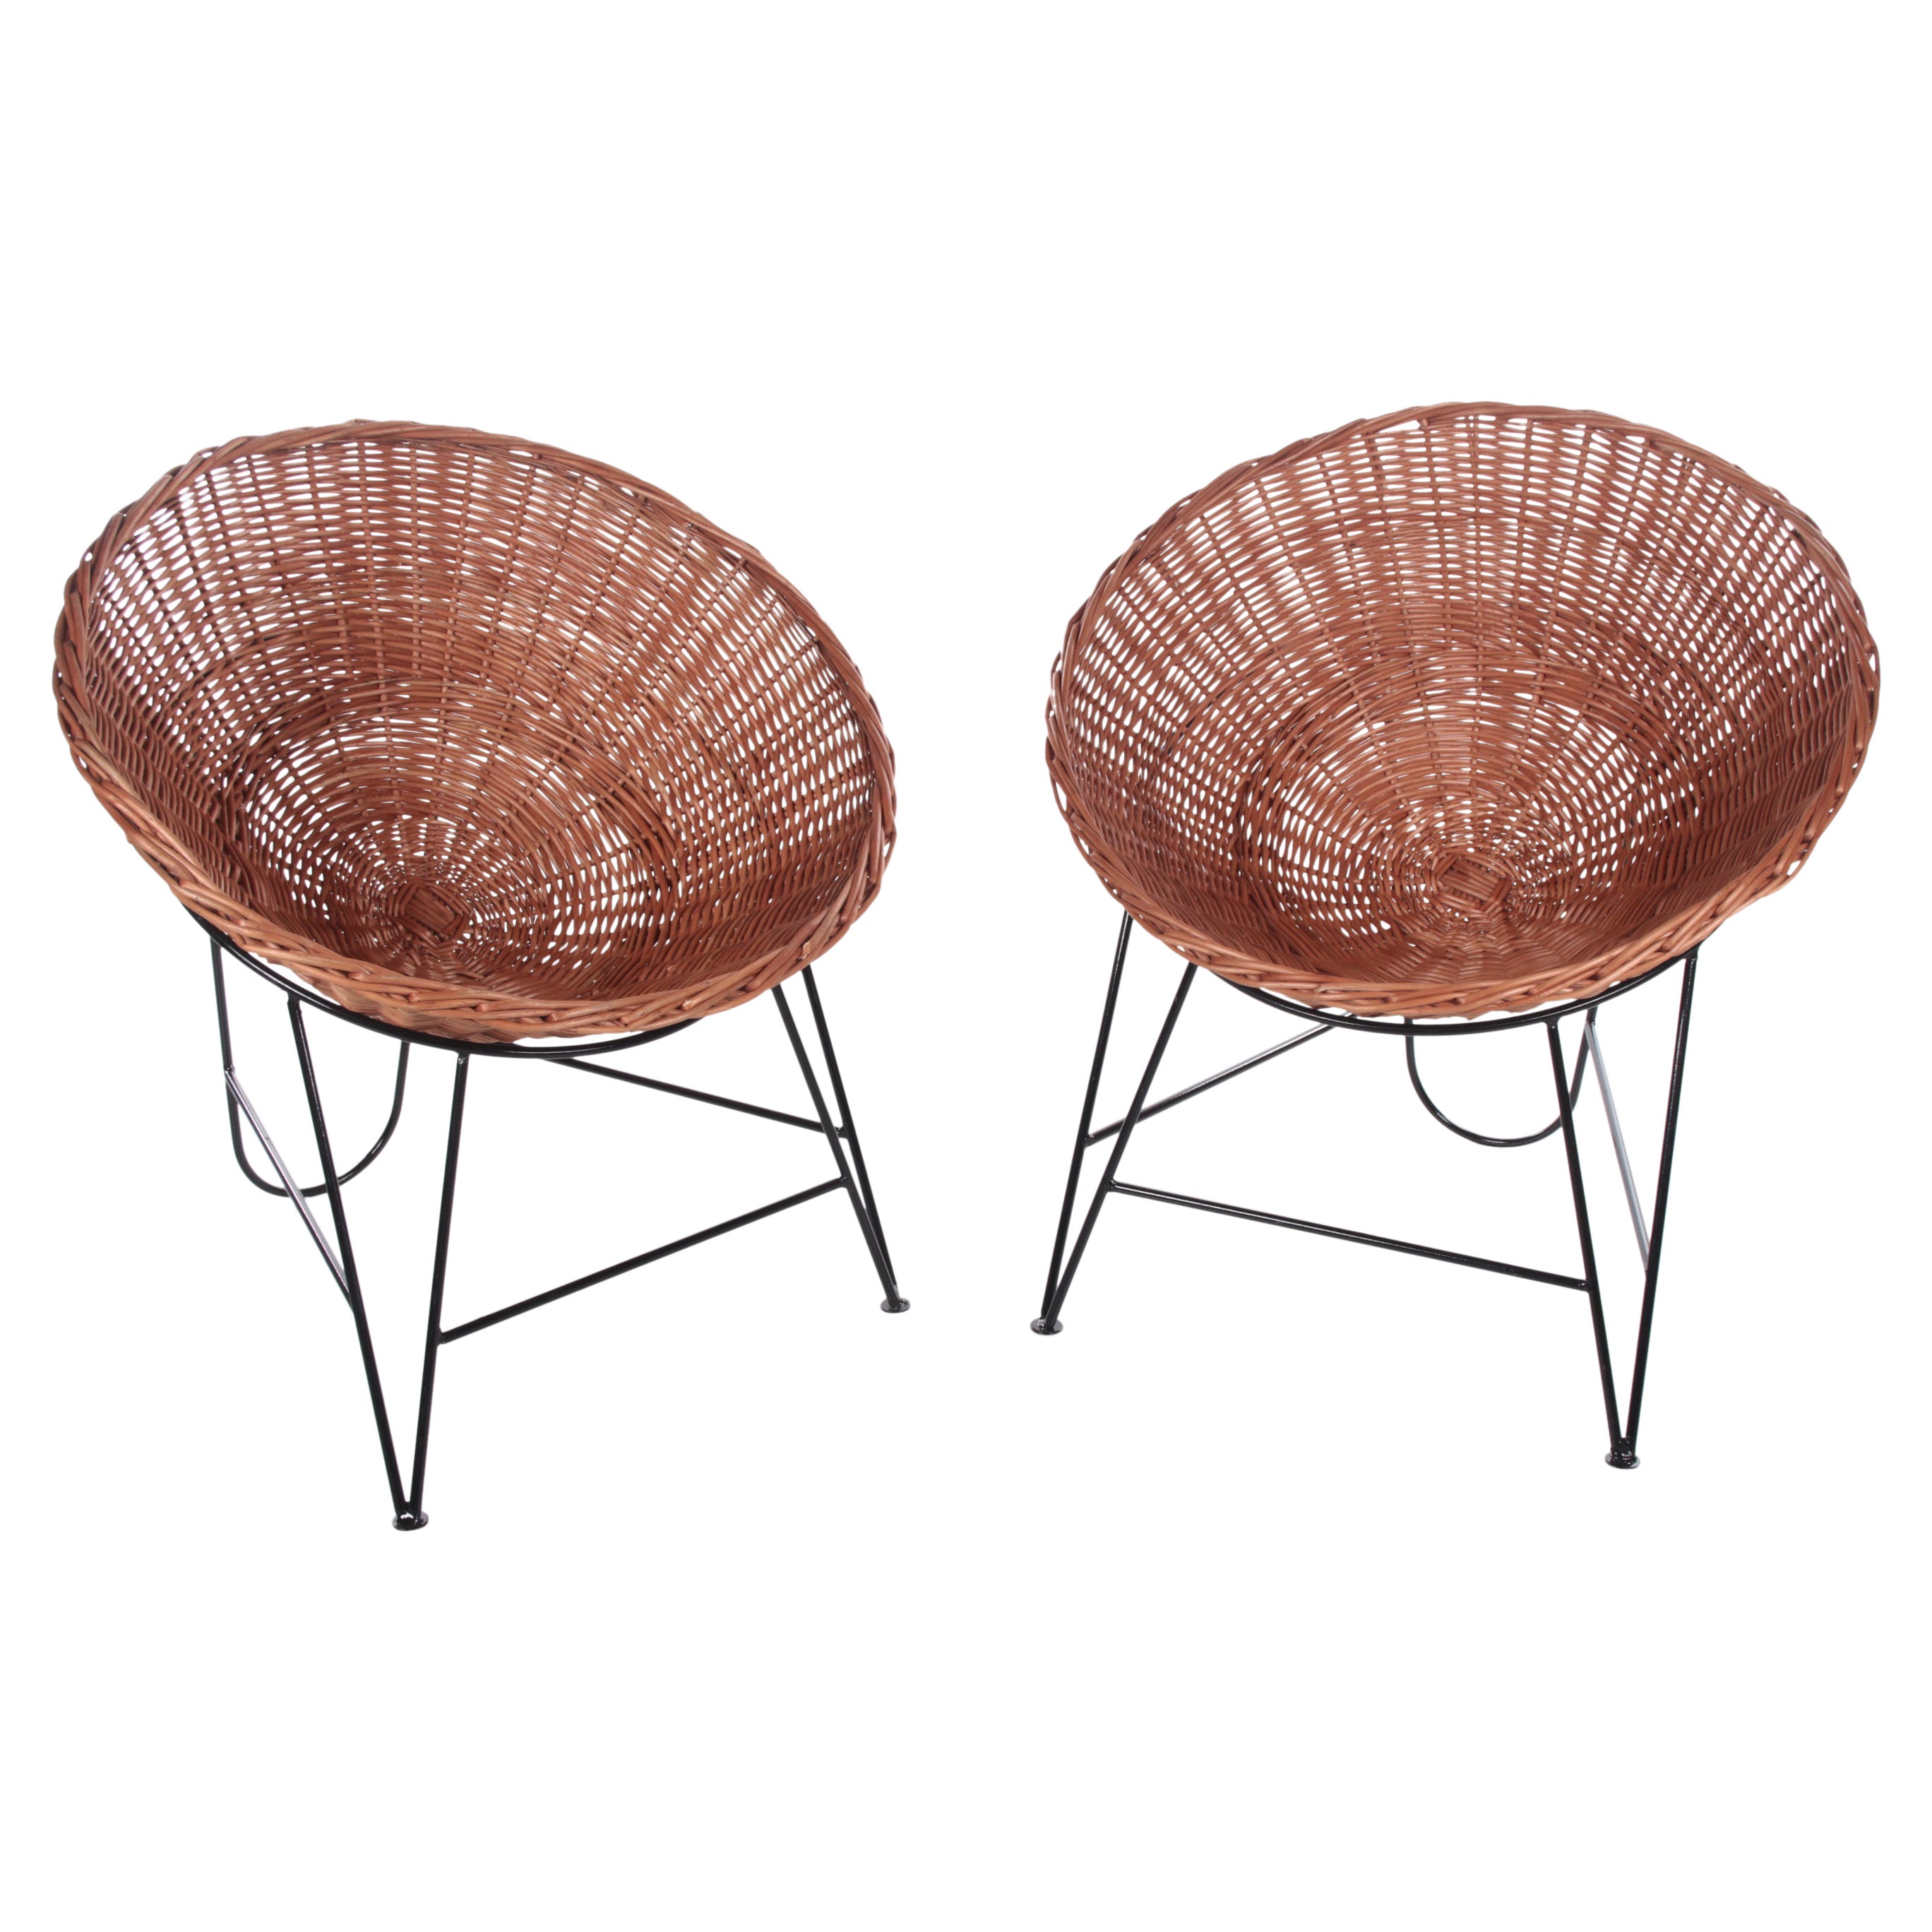 Set of 2 Wicker chairs  of Mathieu Matégot, France, 1950